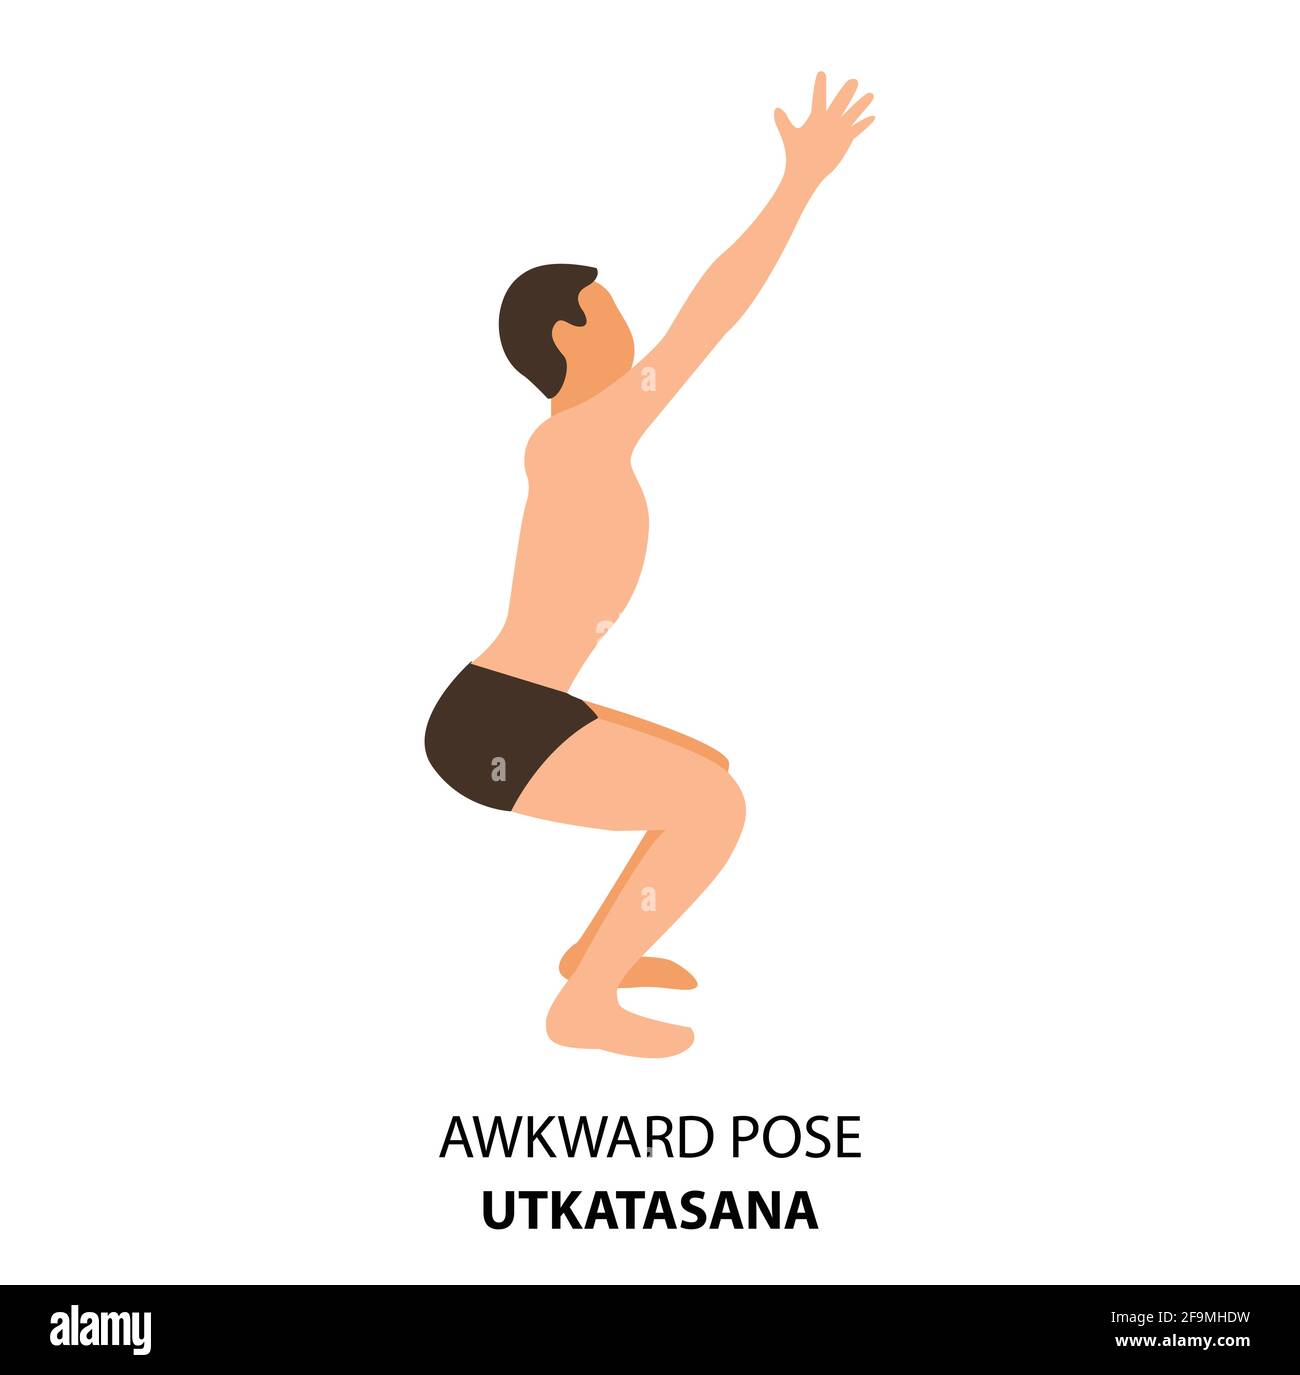 Homme pratiquant le yoga isolé Vector Illustration. Homme faisant la pose de yoga. Homme debout dans une posture embarrassante ou Utkatasana, icône Yoga Asana Illustration de Vecteur